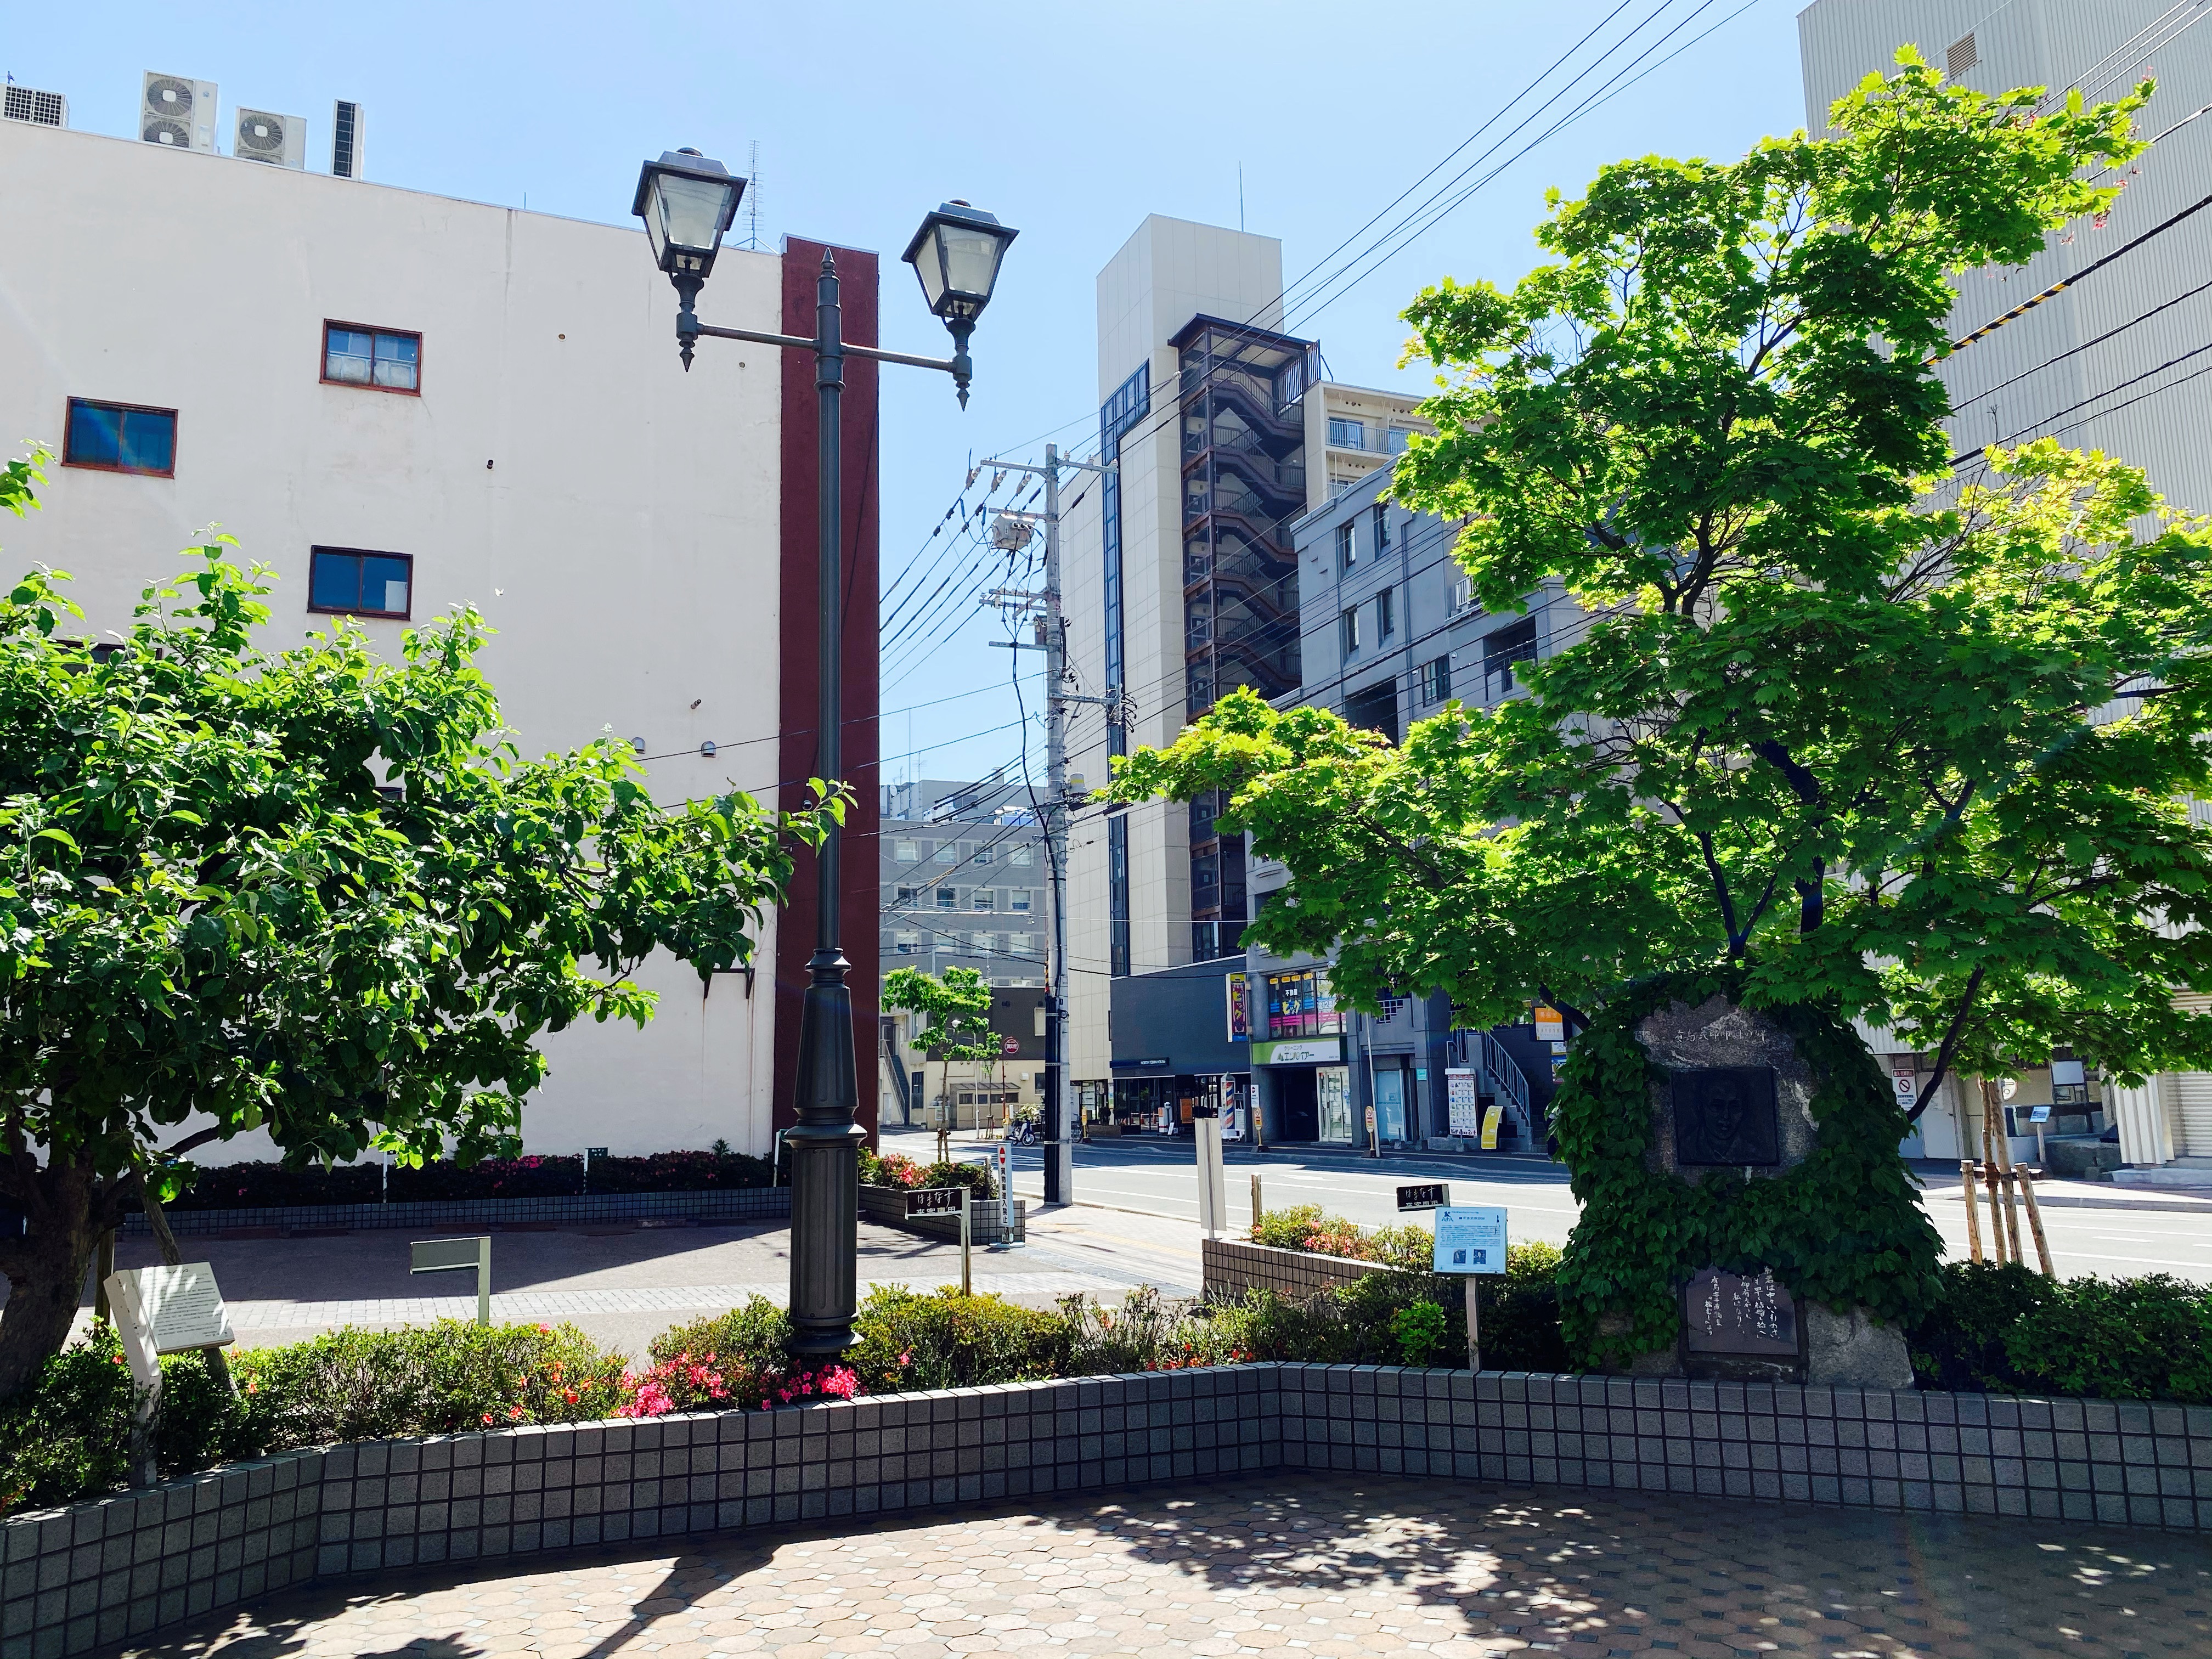 有島武郎邸跡の記念碑がある北酒販本社ビル前庭のオープンスペース